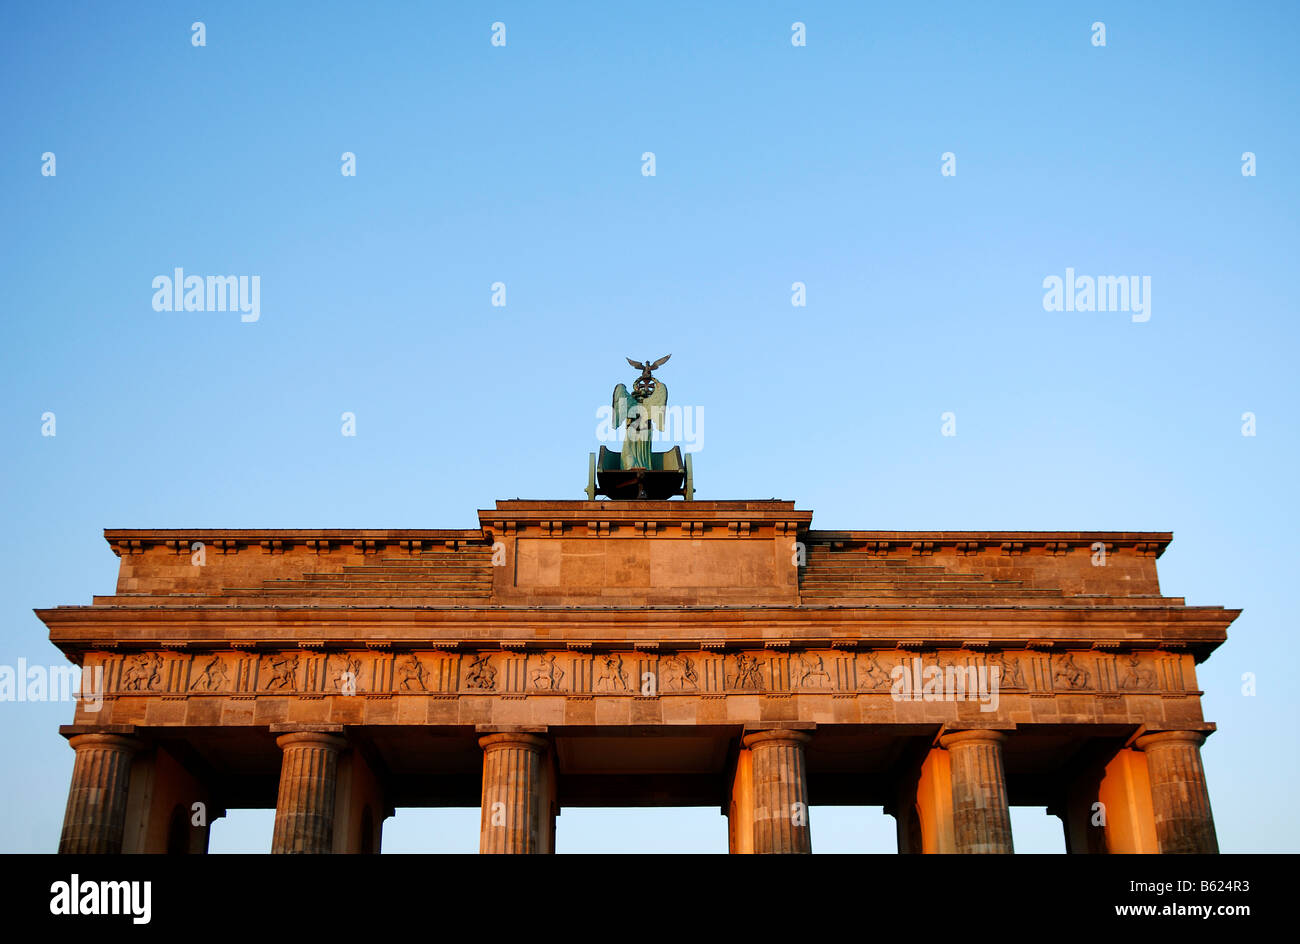 Brandenburger Tor, Porte de Brandebourg, vue de dos, détail montrant le Quadrige, Berlin, Germany, Europe Banque D'Images